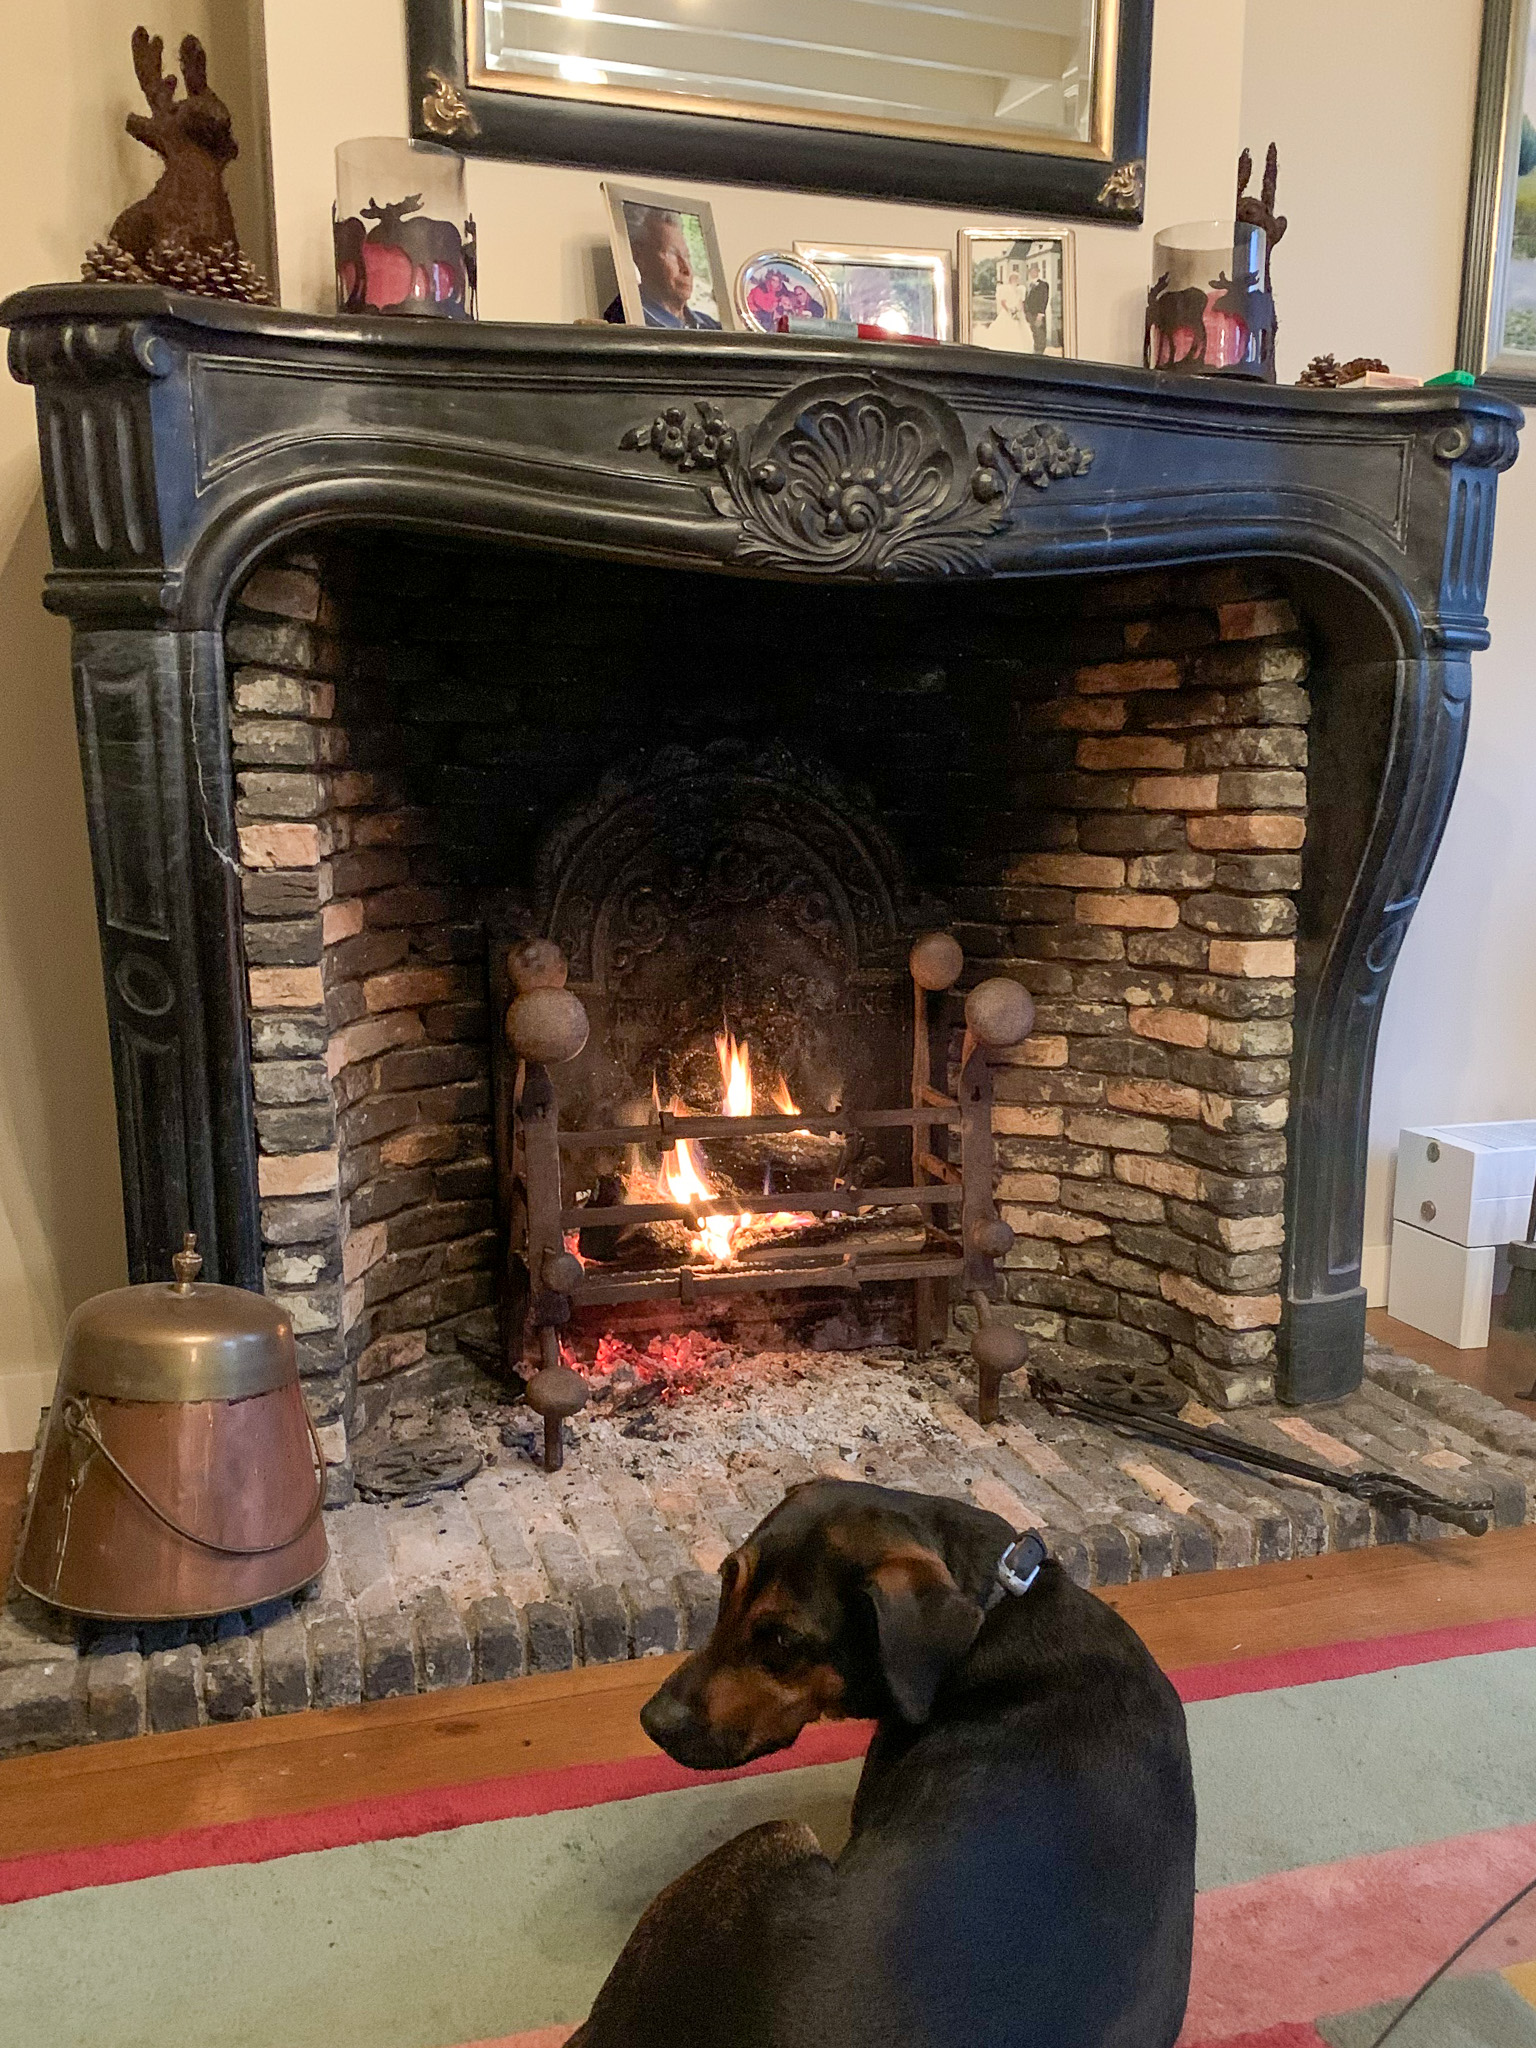 Doofpot in a Dutch fireplace